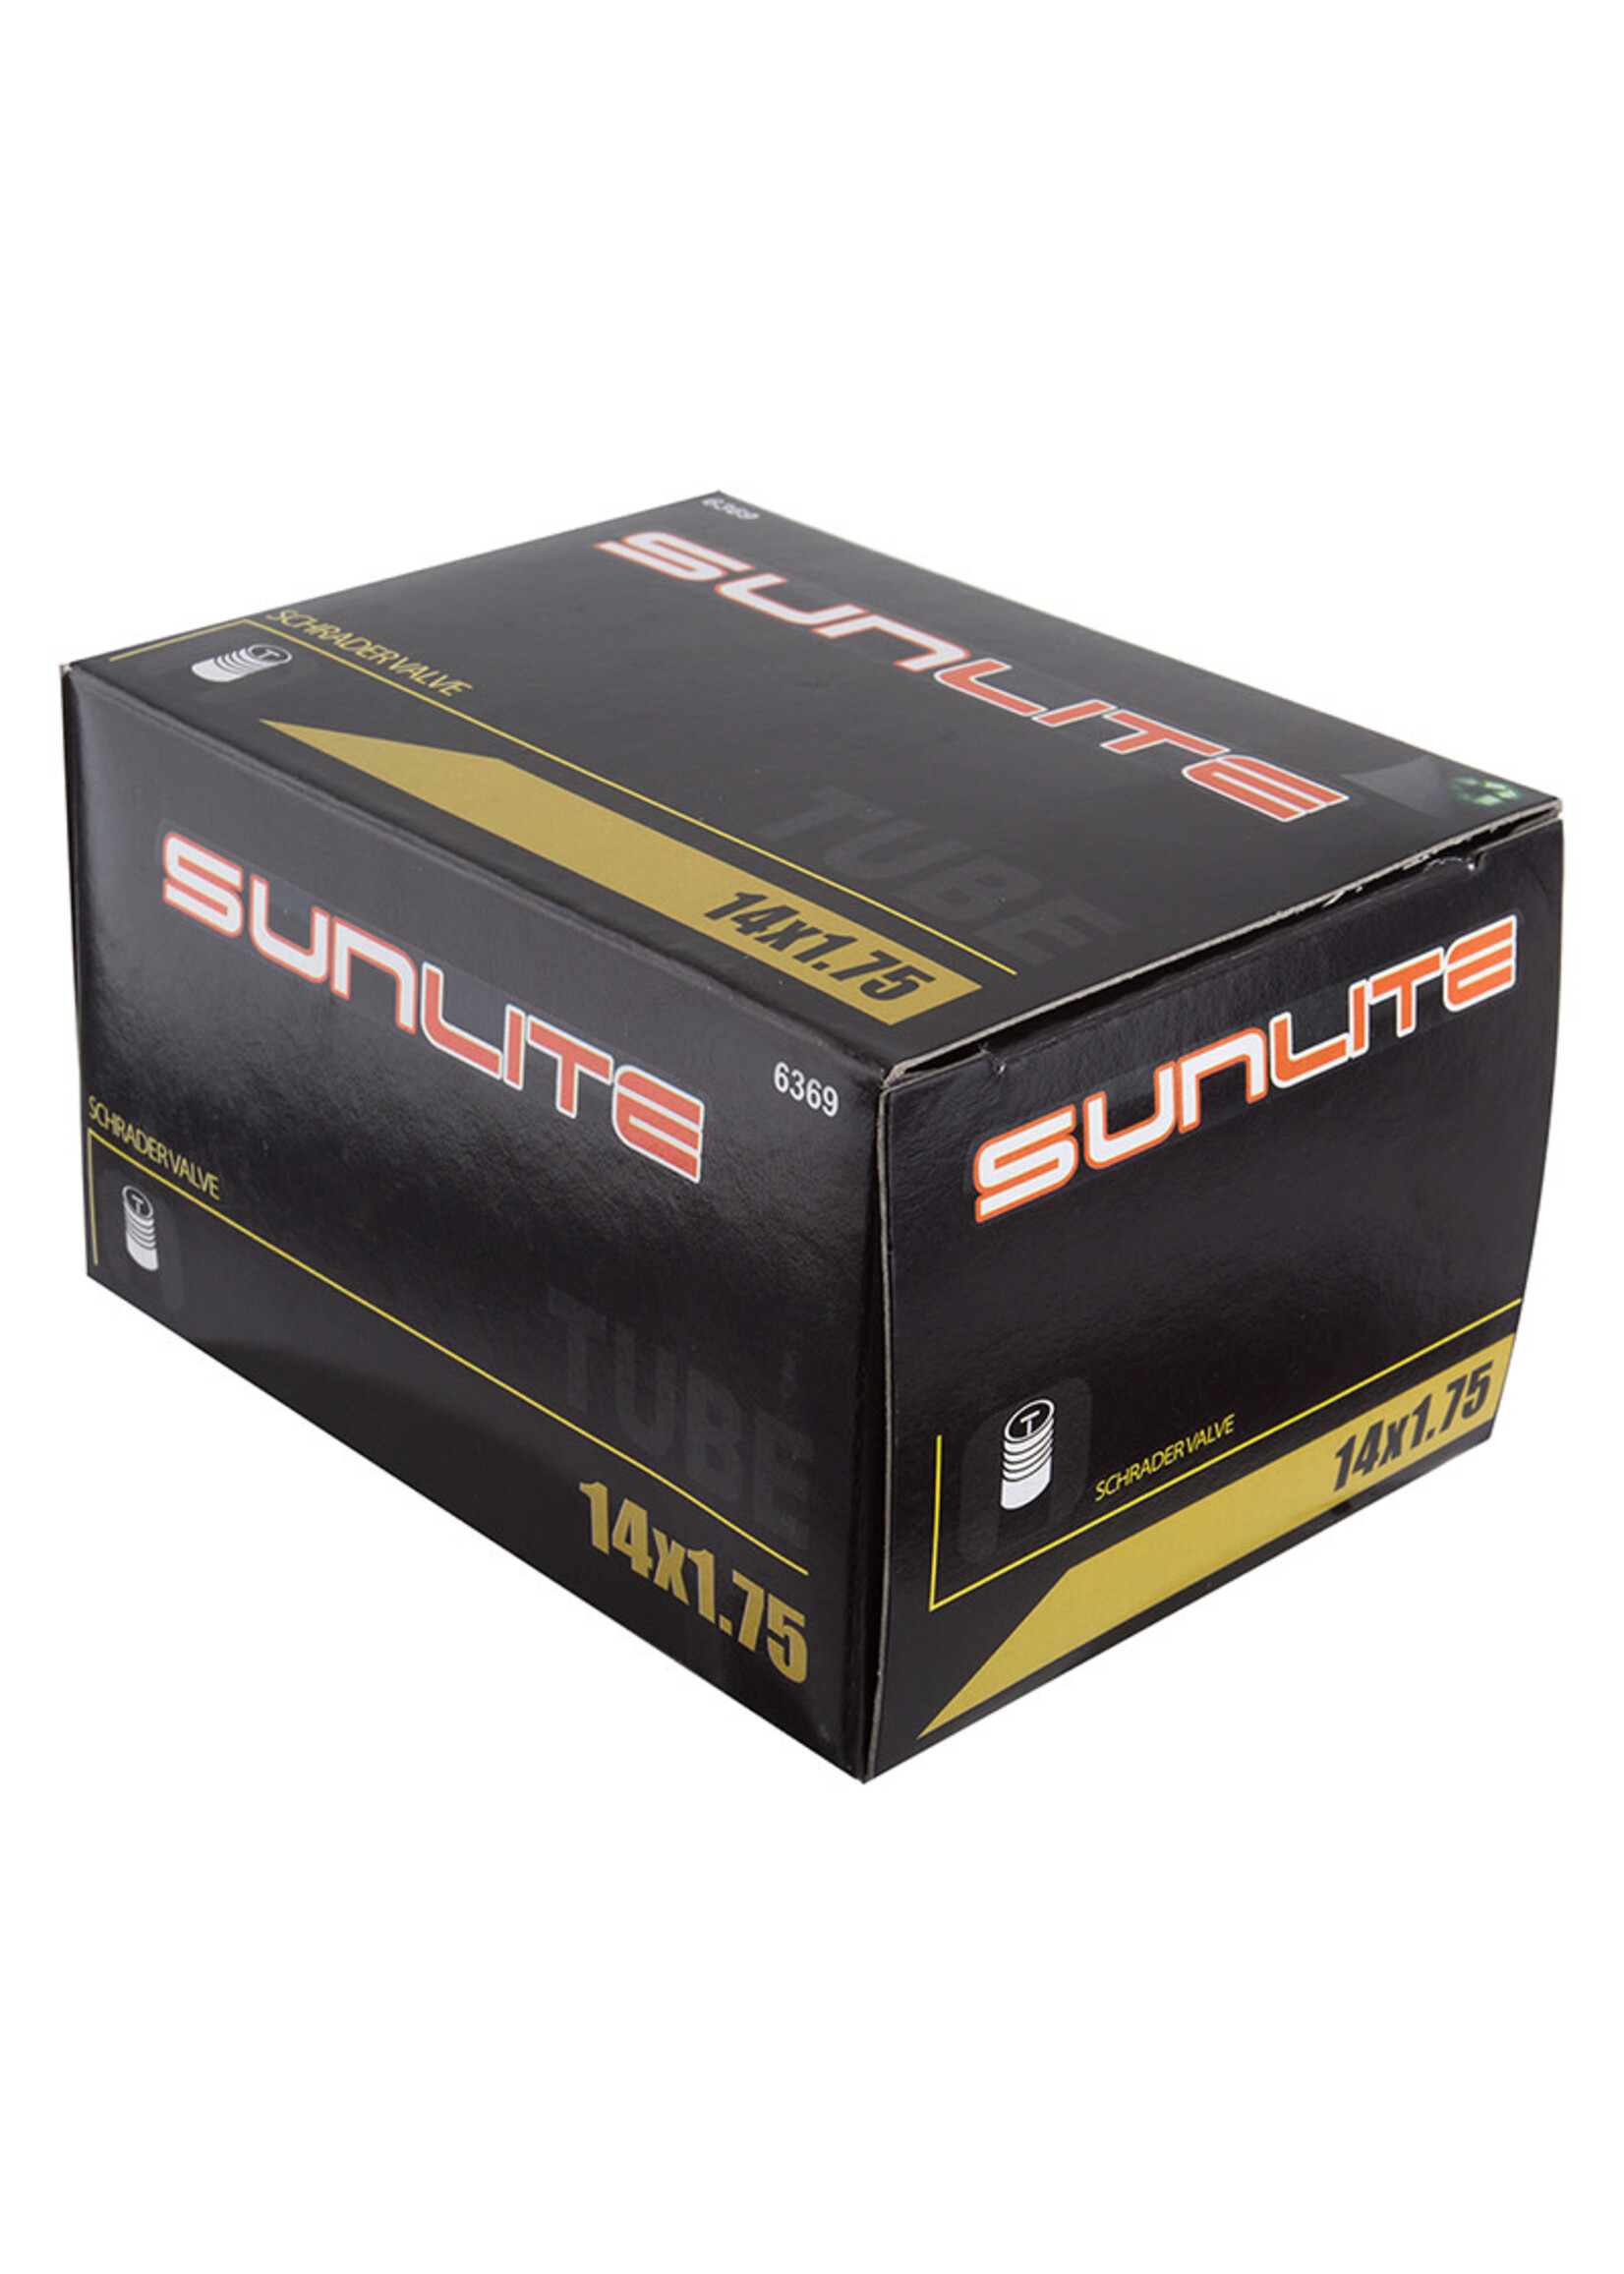 Sunlite TUBE SUNLT 14x1.75 SV32 FFW44mm